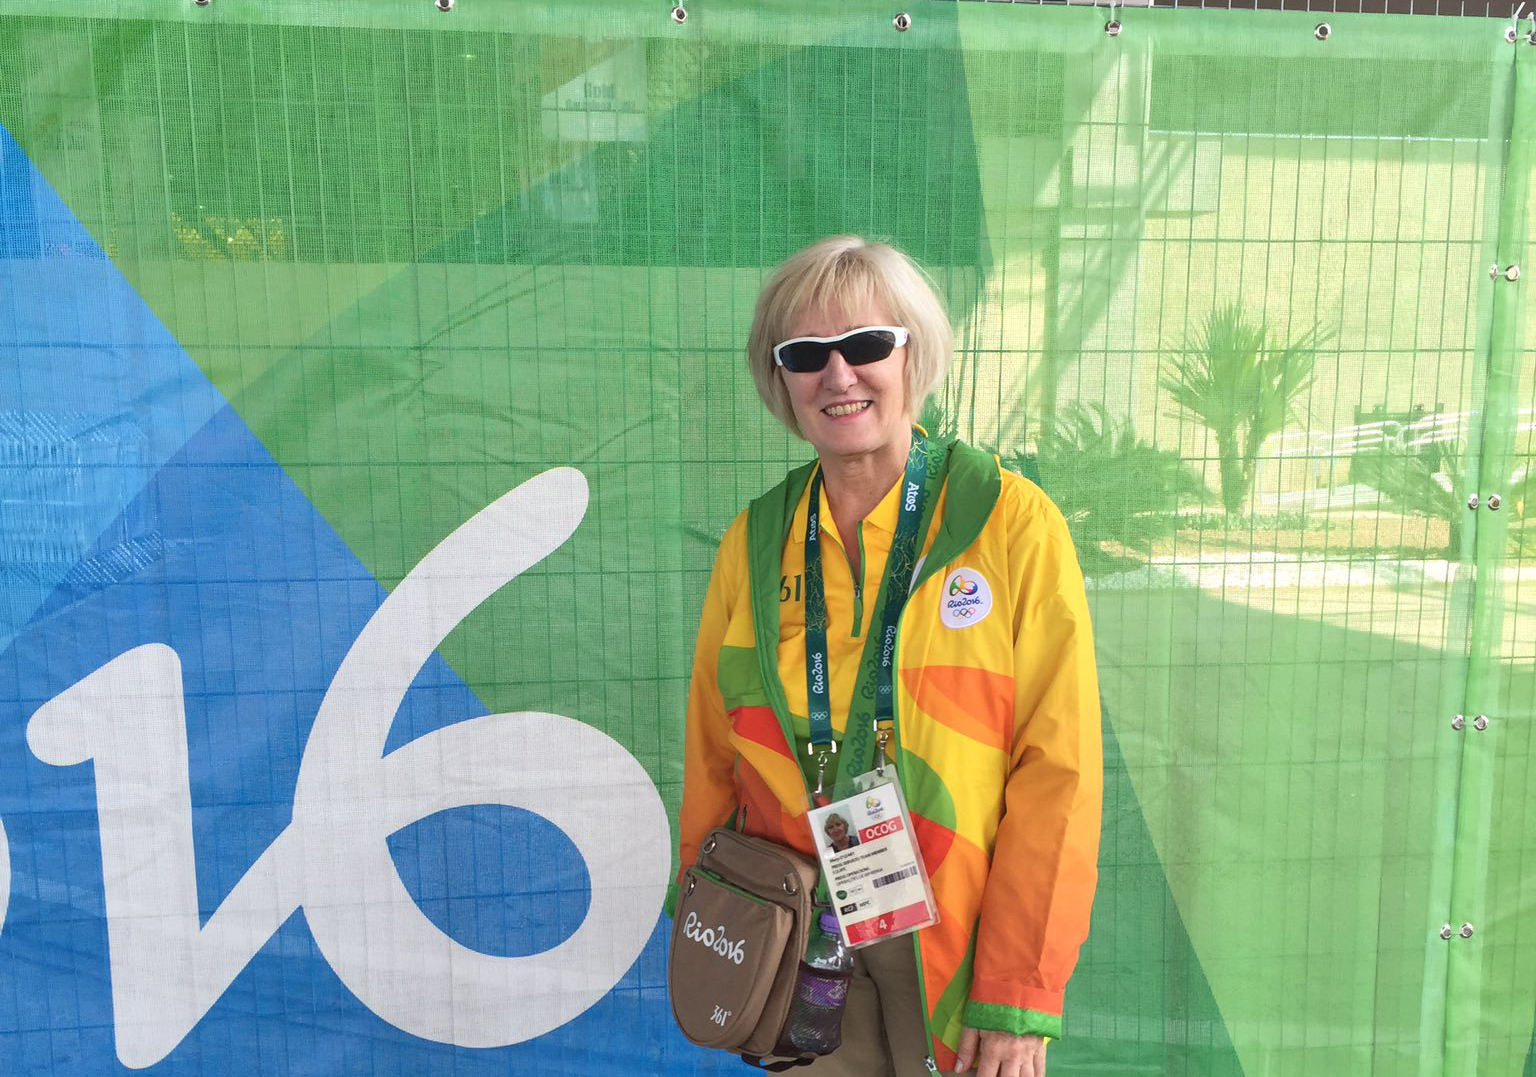 Volunteering at Rio 2016